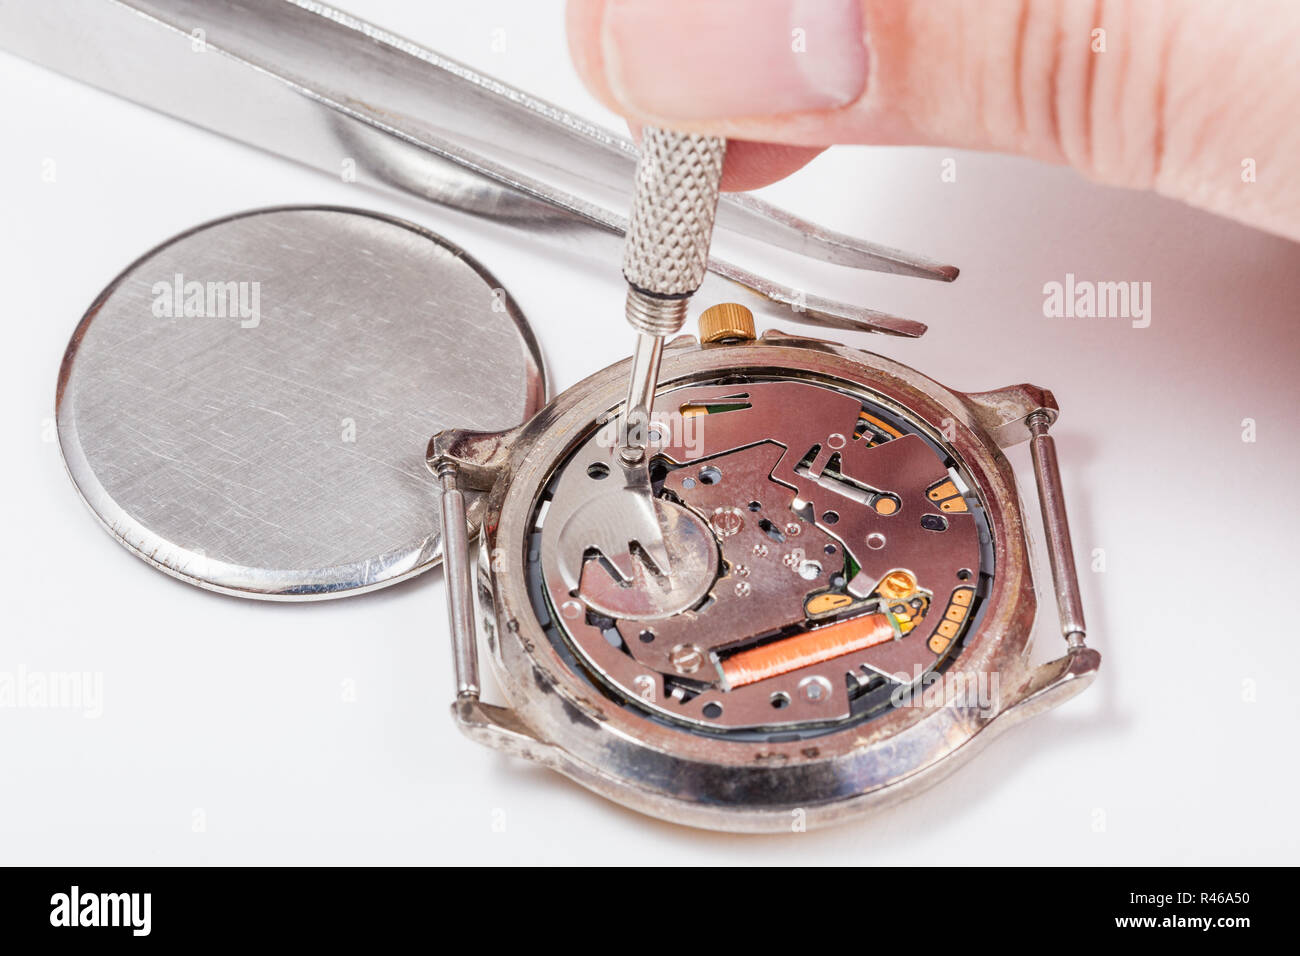 Uhrmacher ersetzt Batterie Quarzuhr Stockfotografie - Alamy